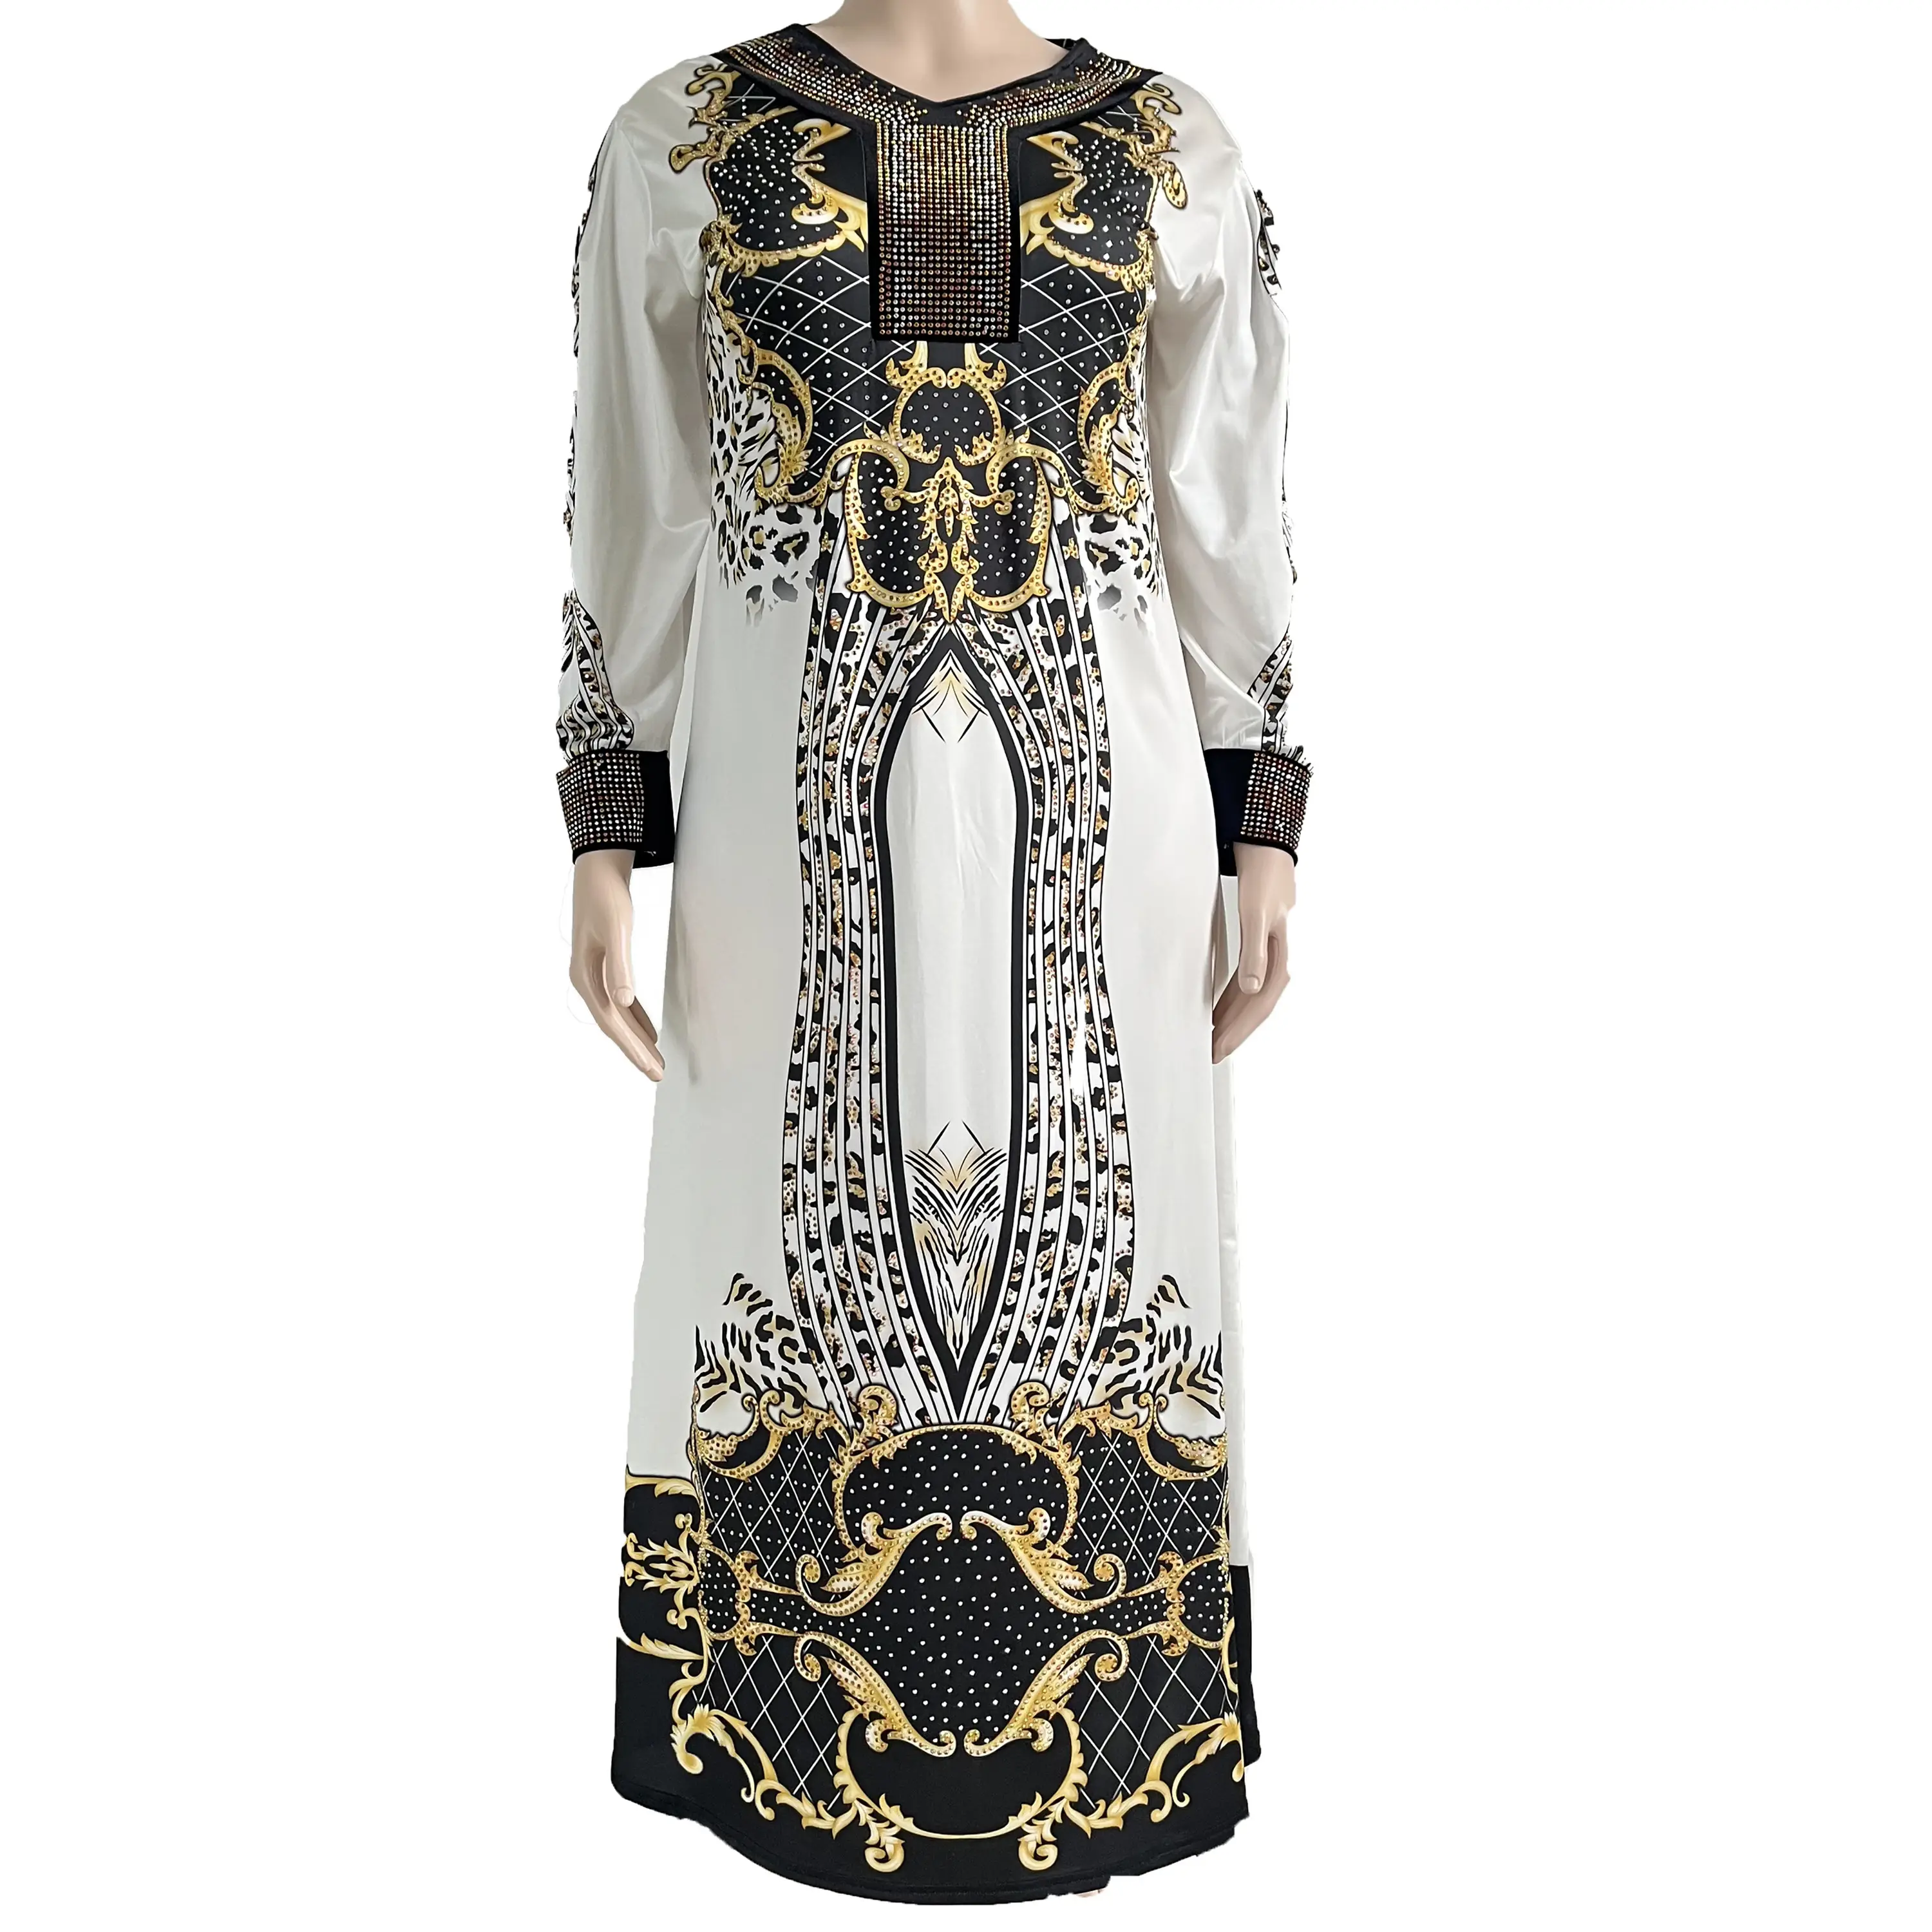 Großes Damen kleid eingelegt mit exquisiten Stein digital bedruckten Stoff bequemen Rückzug edel lila klassisch schwarz de